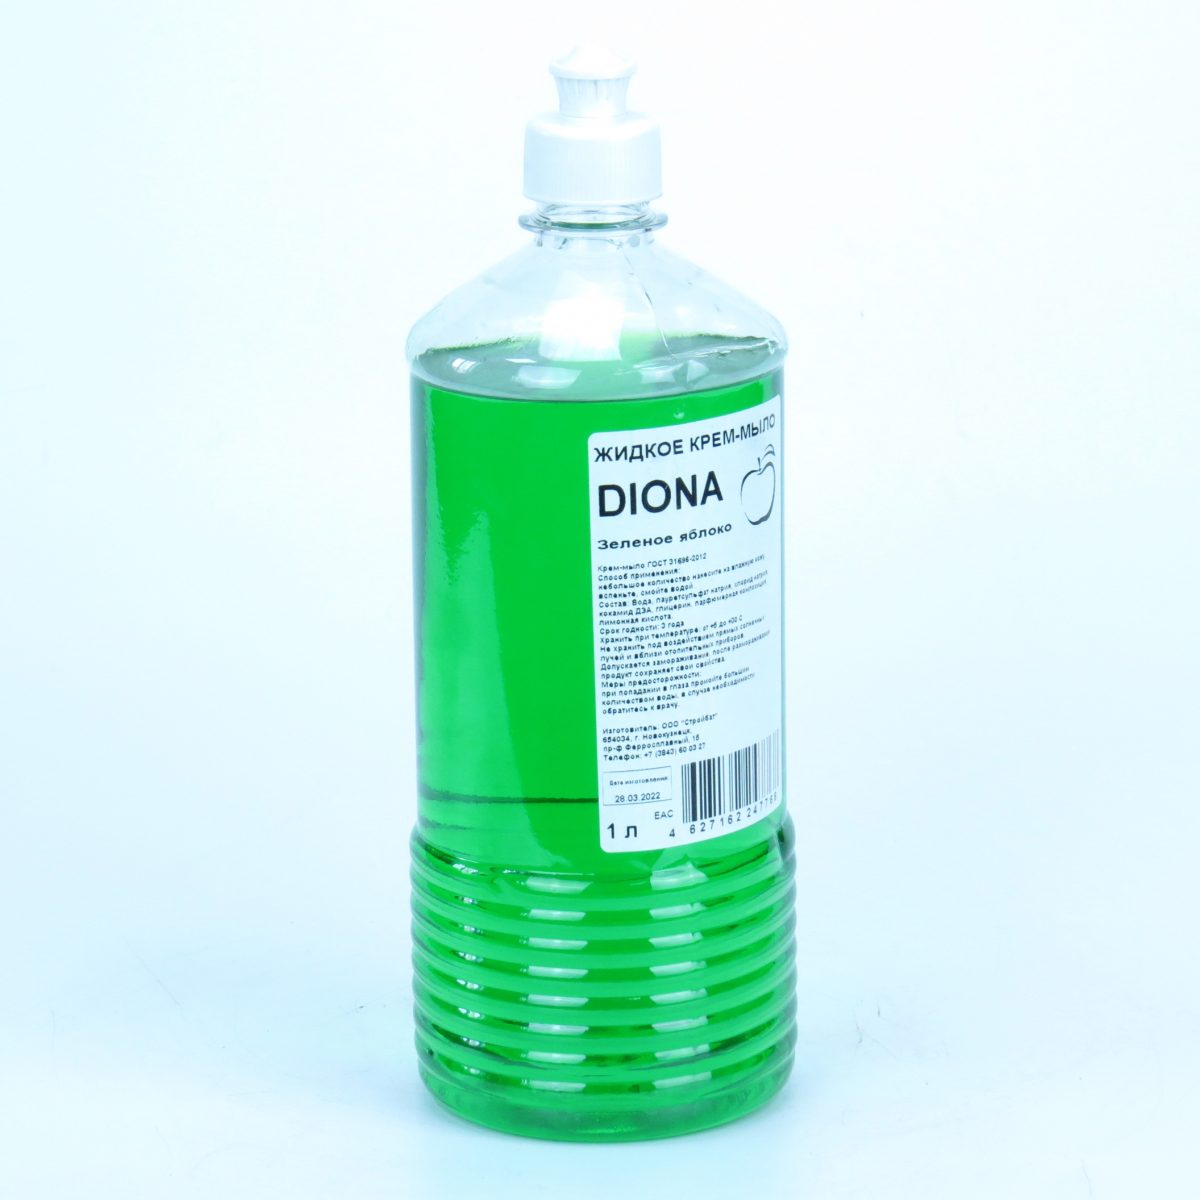 Жидкое крем-мыло Diona зеленое яблоко ПЭТ 1л (пуш-пул)-2